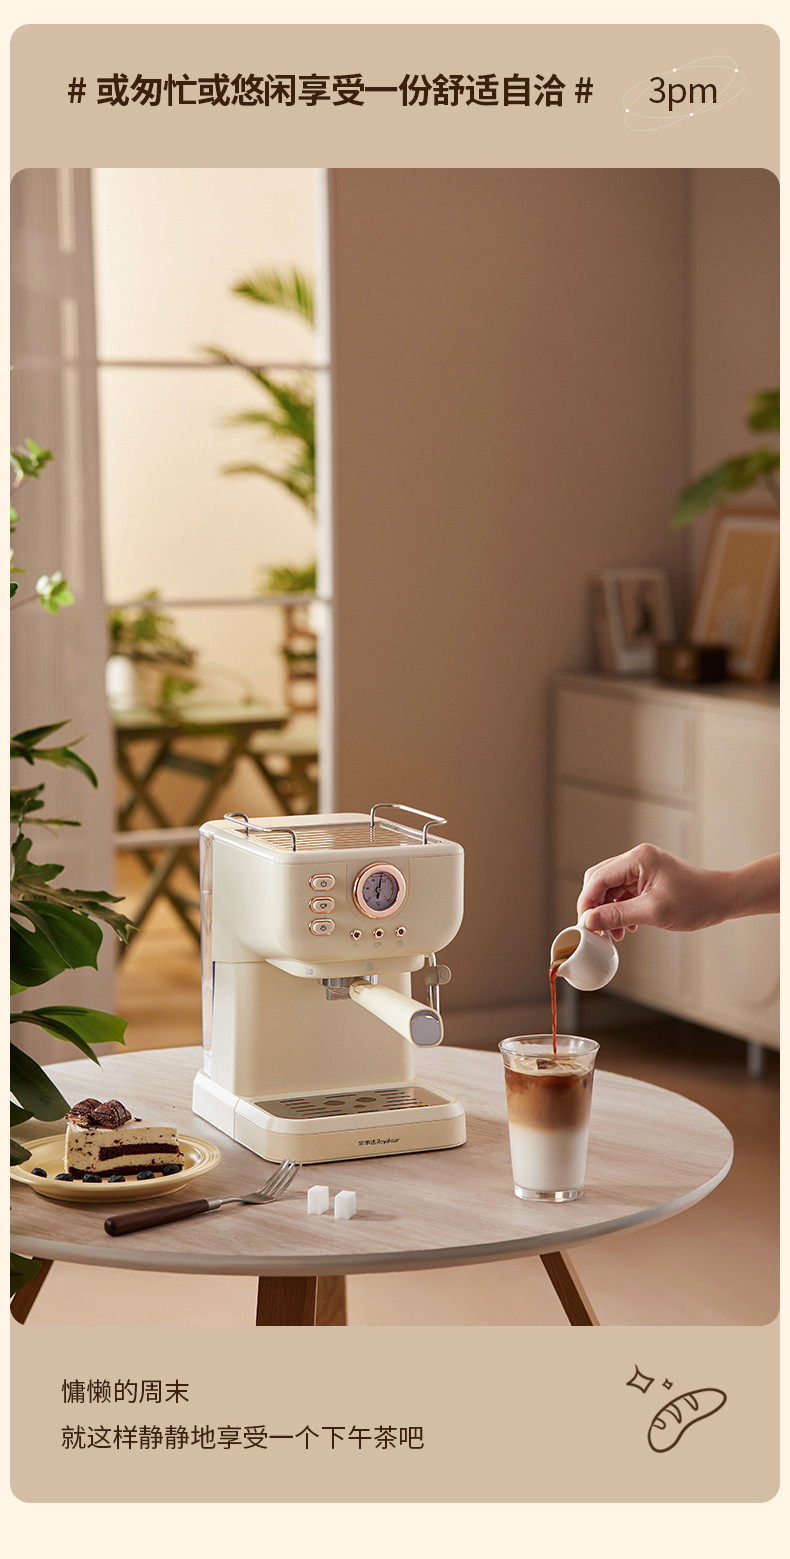 荣事达 小型家用咖啡机RS-CF900B